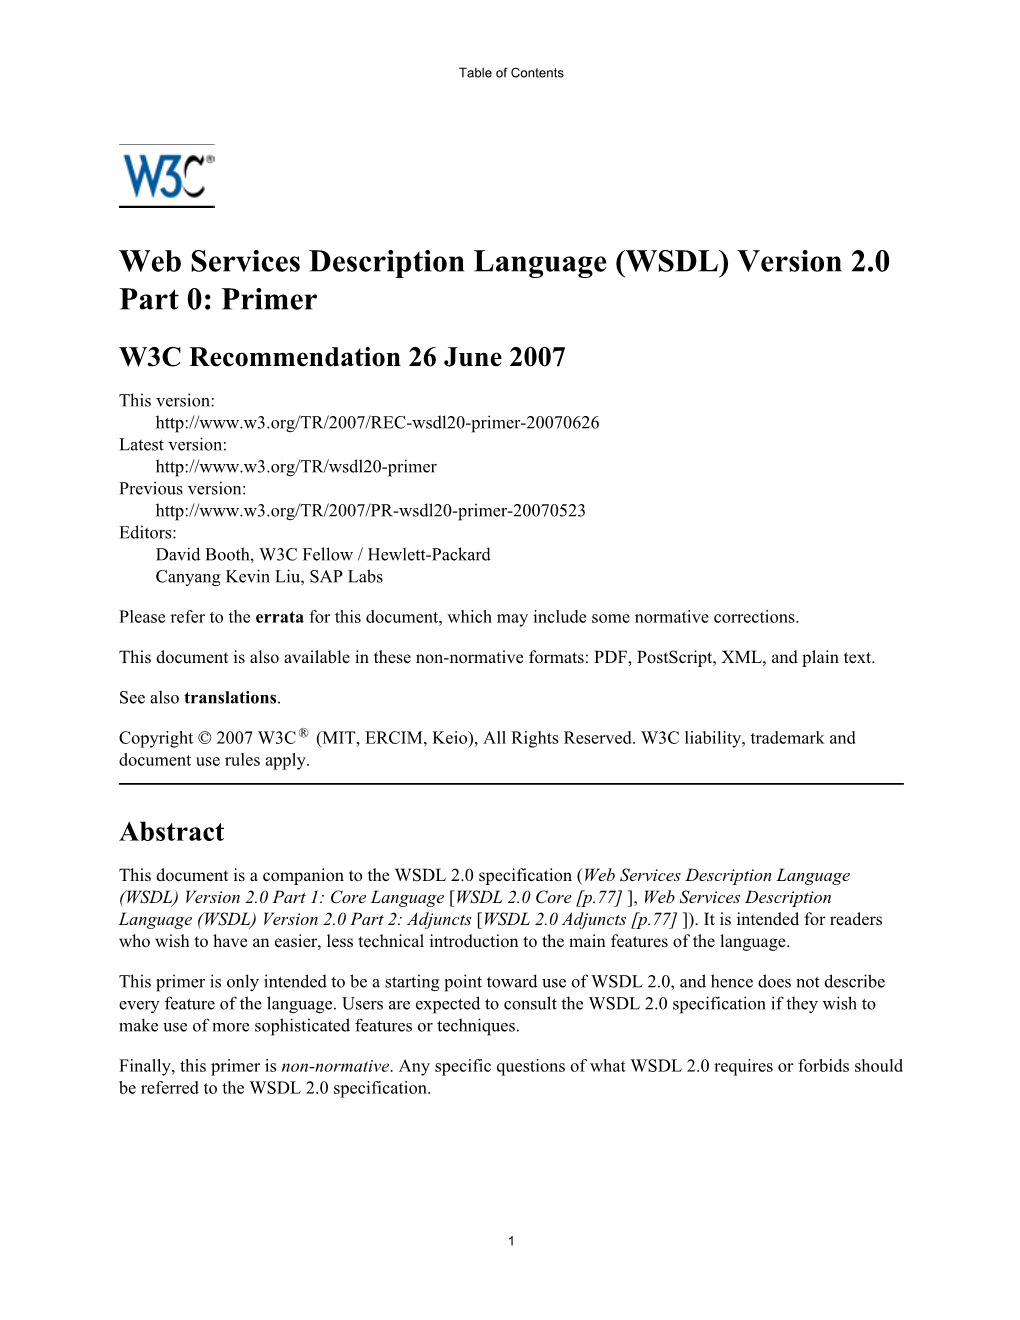 Web Services Description Language †WSDL‡ Version 2.0 Part 0: Primer